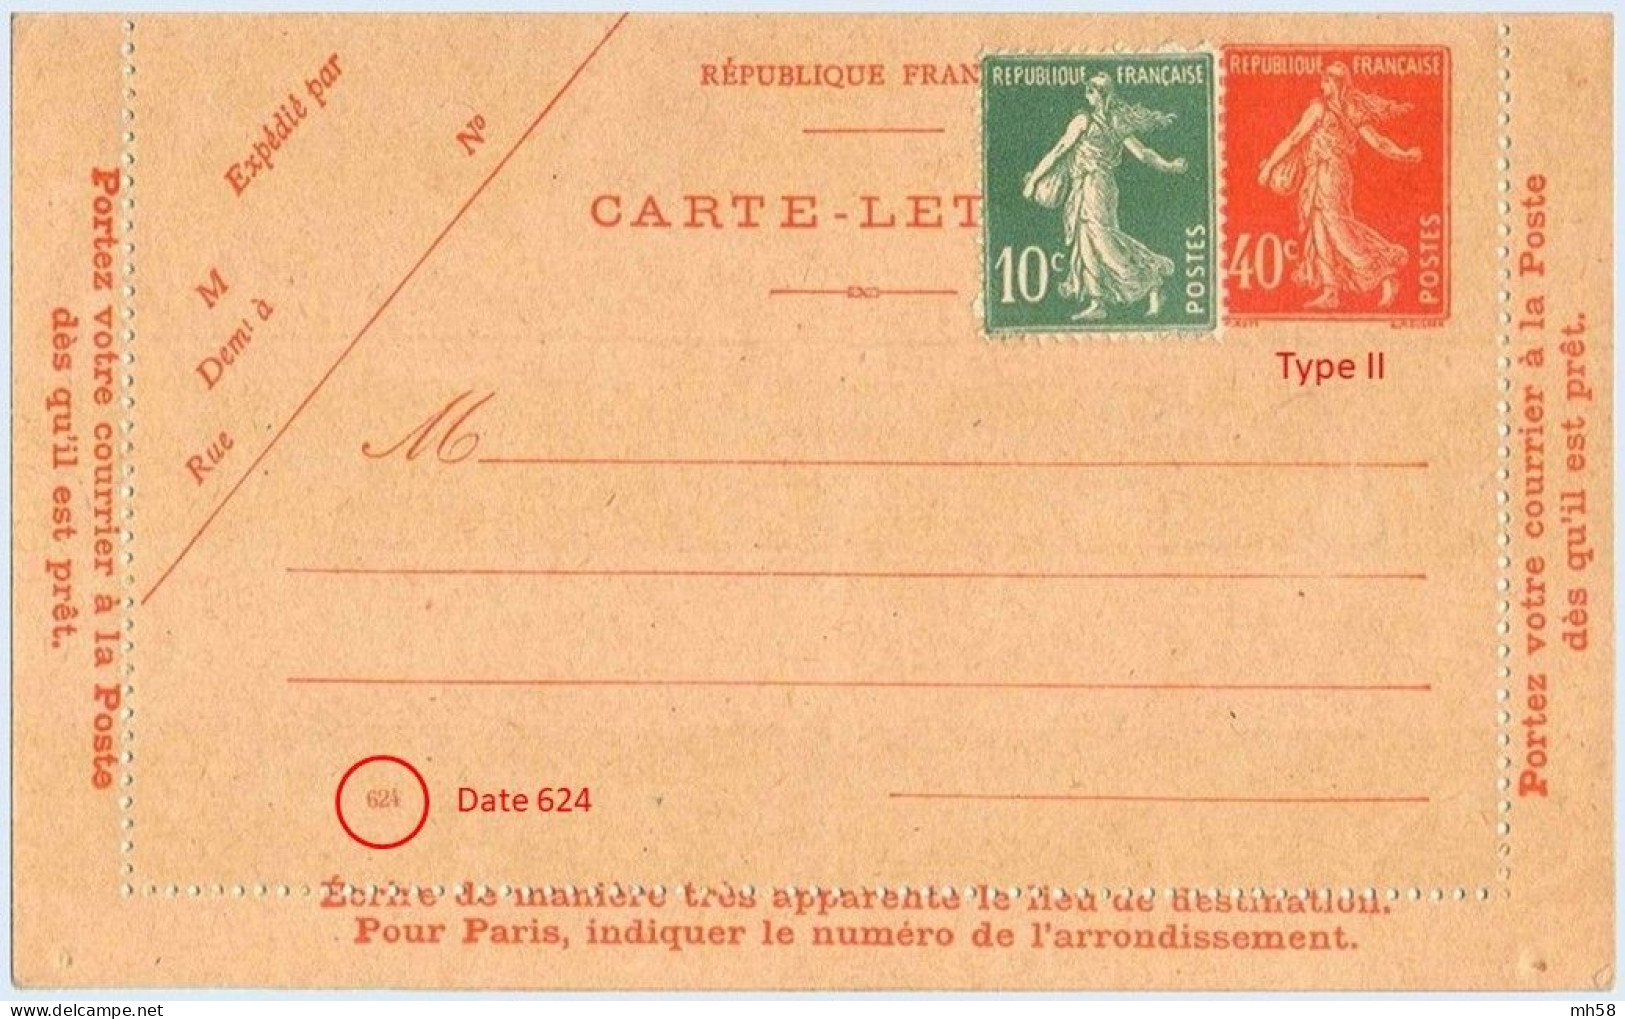 Entier FRANCE - Carte-lettre Date 624 Neuf ** - 40c Semeuse Vermillon - Kartenbriefe